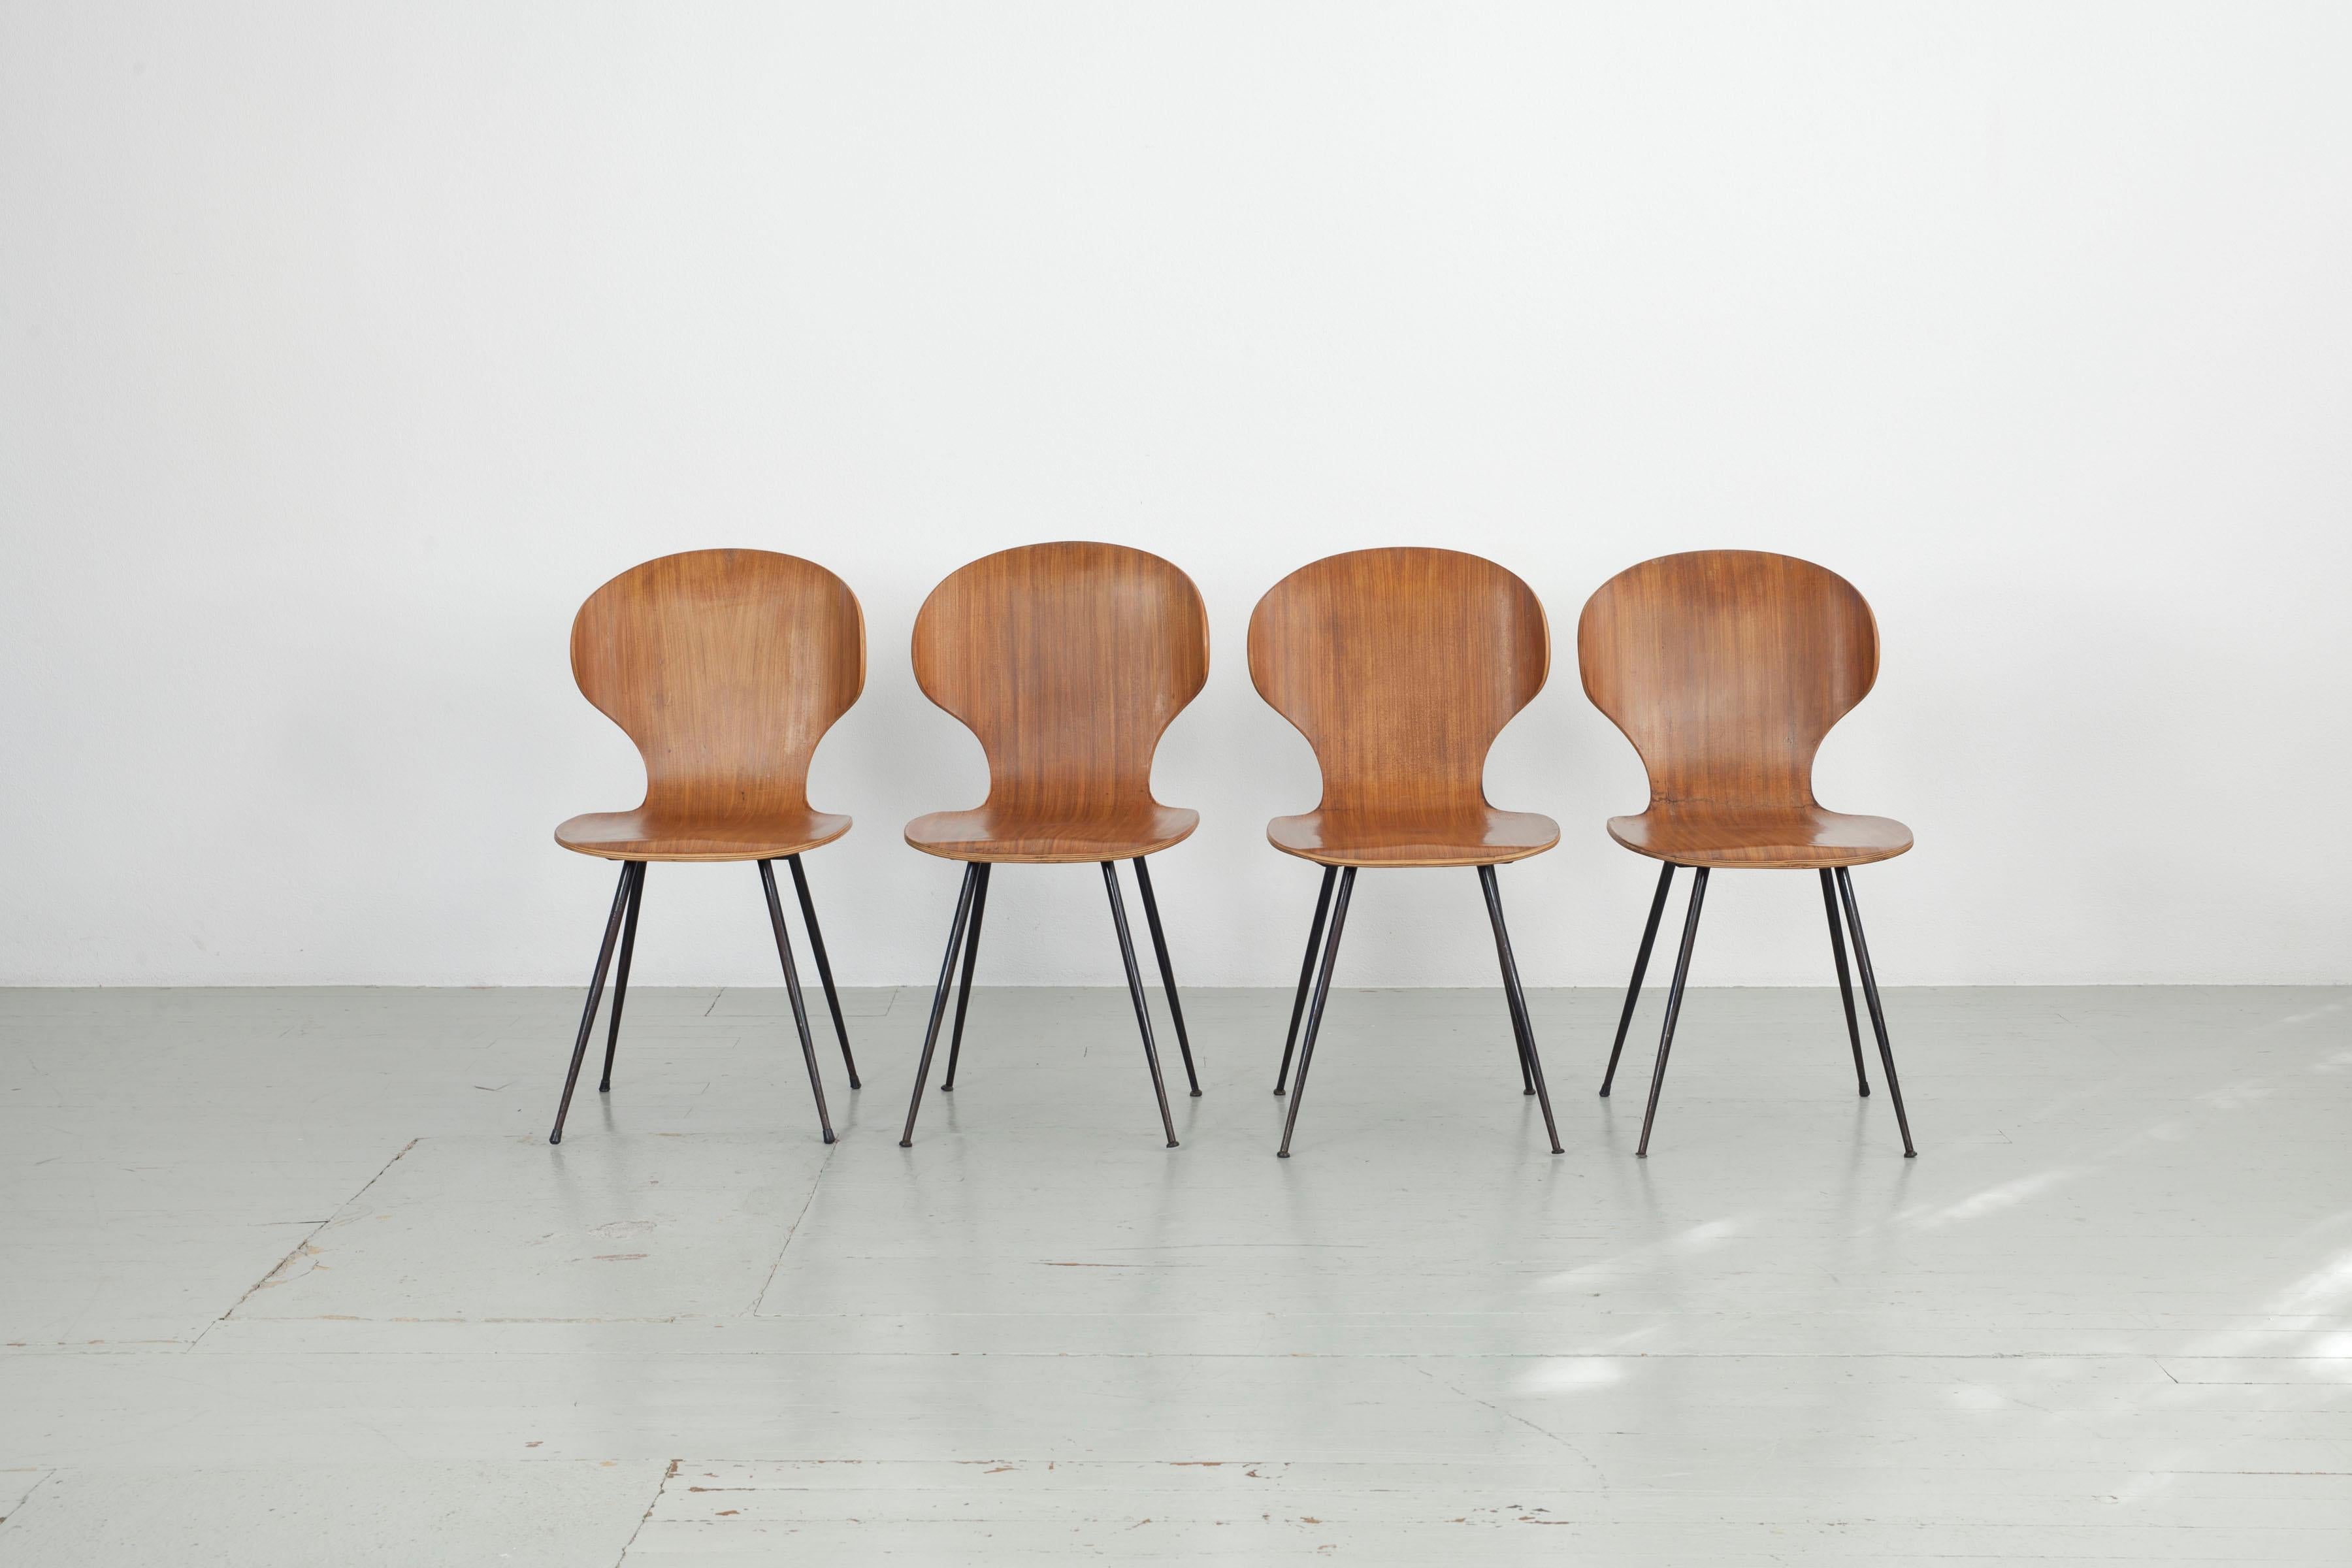 Dieses italienische Stuhlmodell wurde in den 1950er Jahren von Carlo Ratti für Industira Legni Curvati Lissoni entworfen und besteht aus Bugholz und schwarz lackierten Metallbeinen. Die abgerundeten Formen und die dünnen Beine verleihen dem Stuhl